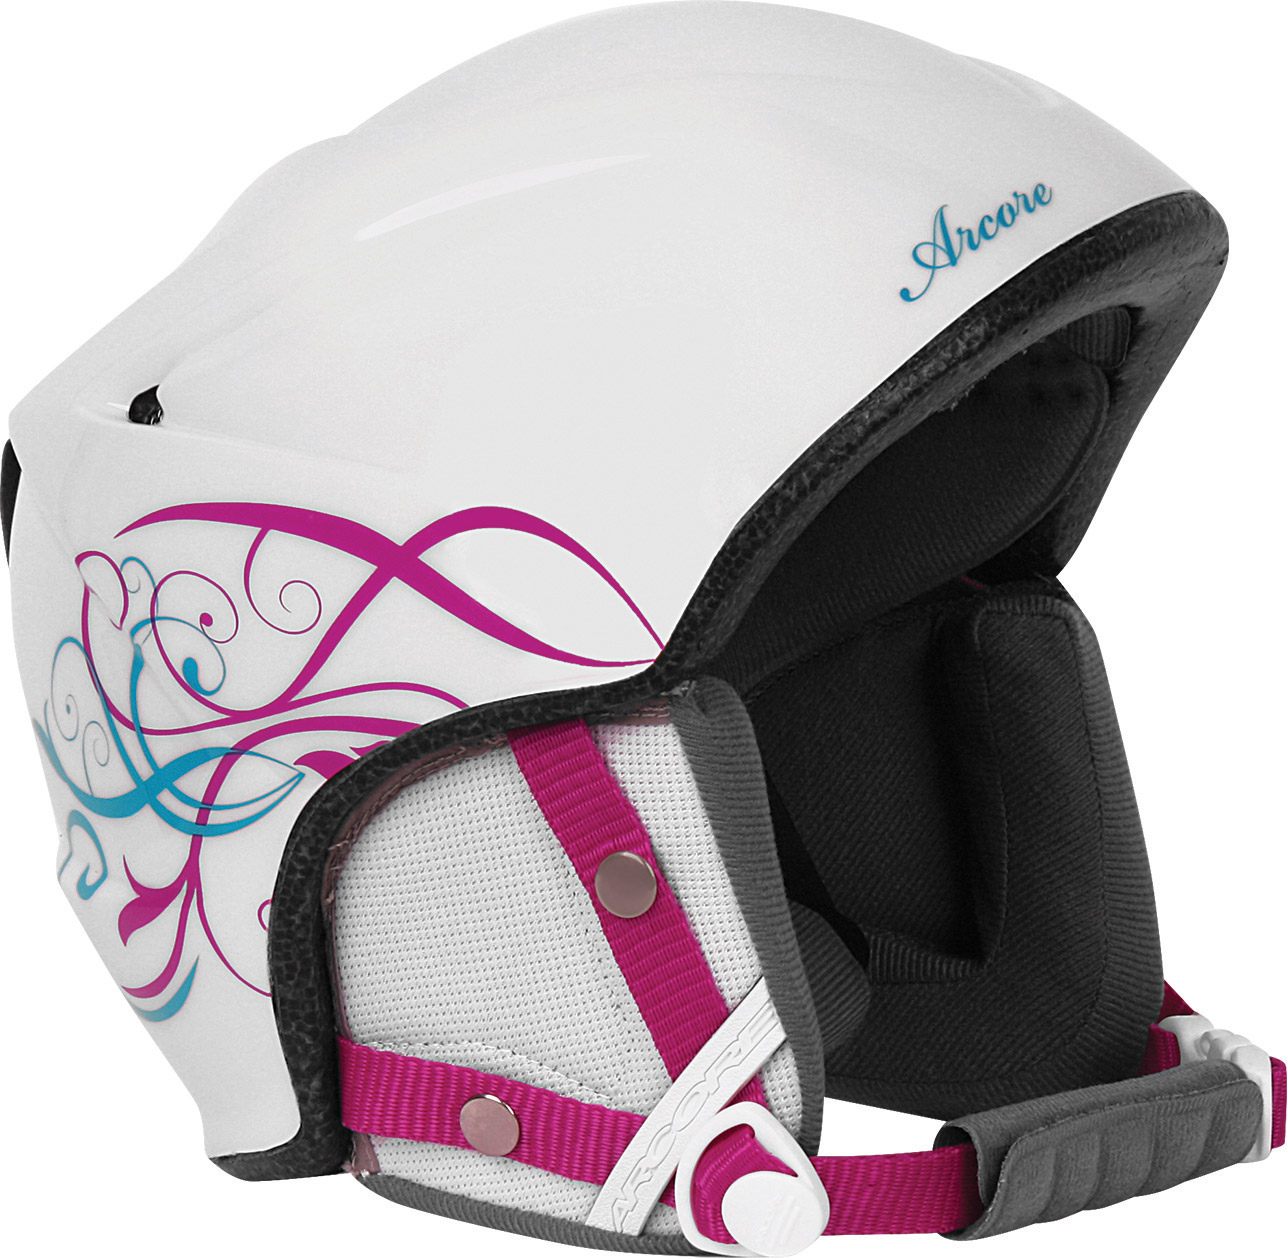 Kid's Alpine Skiing Helmet